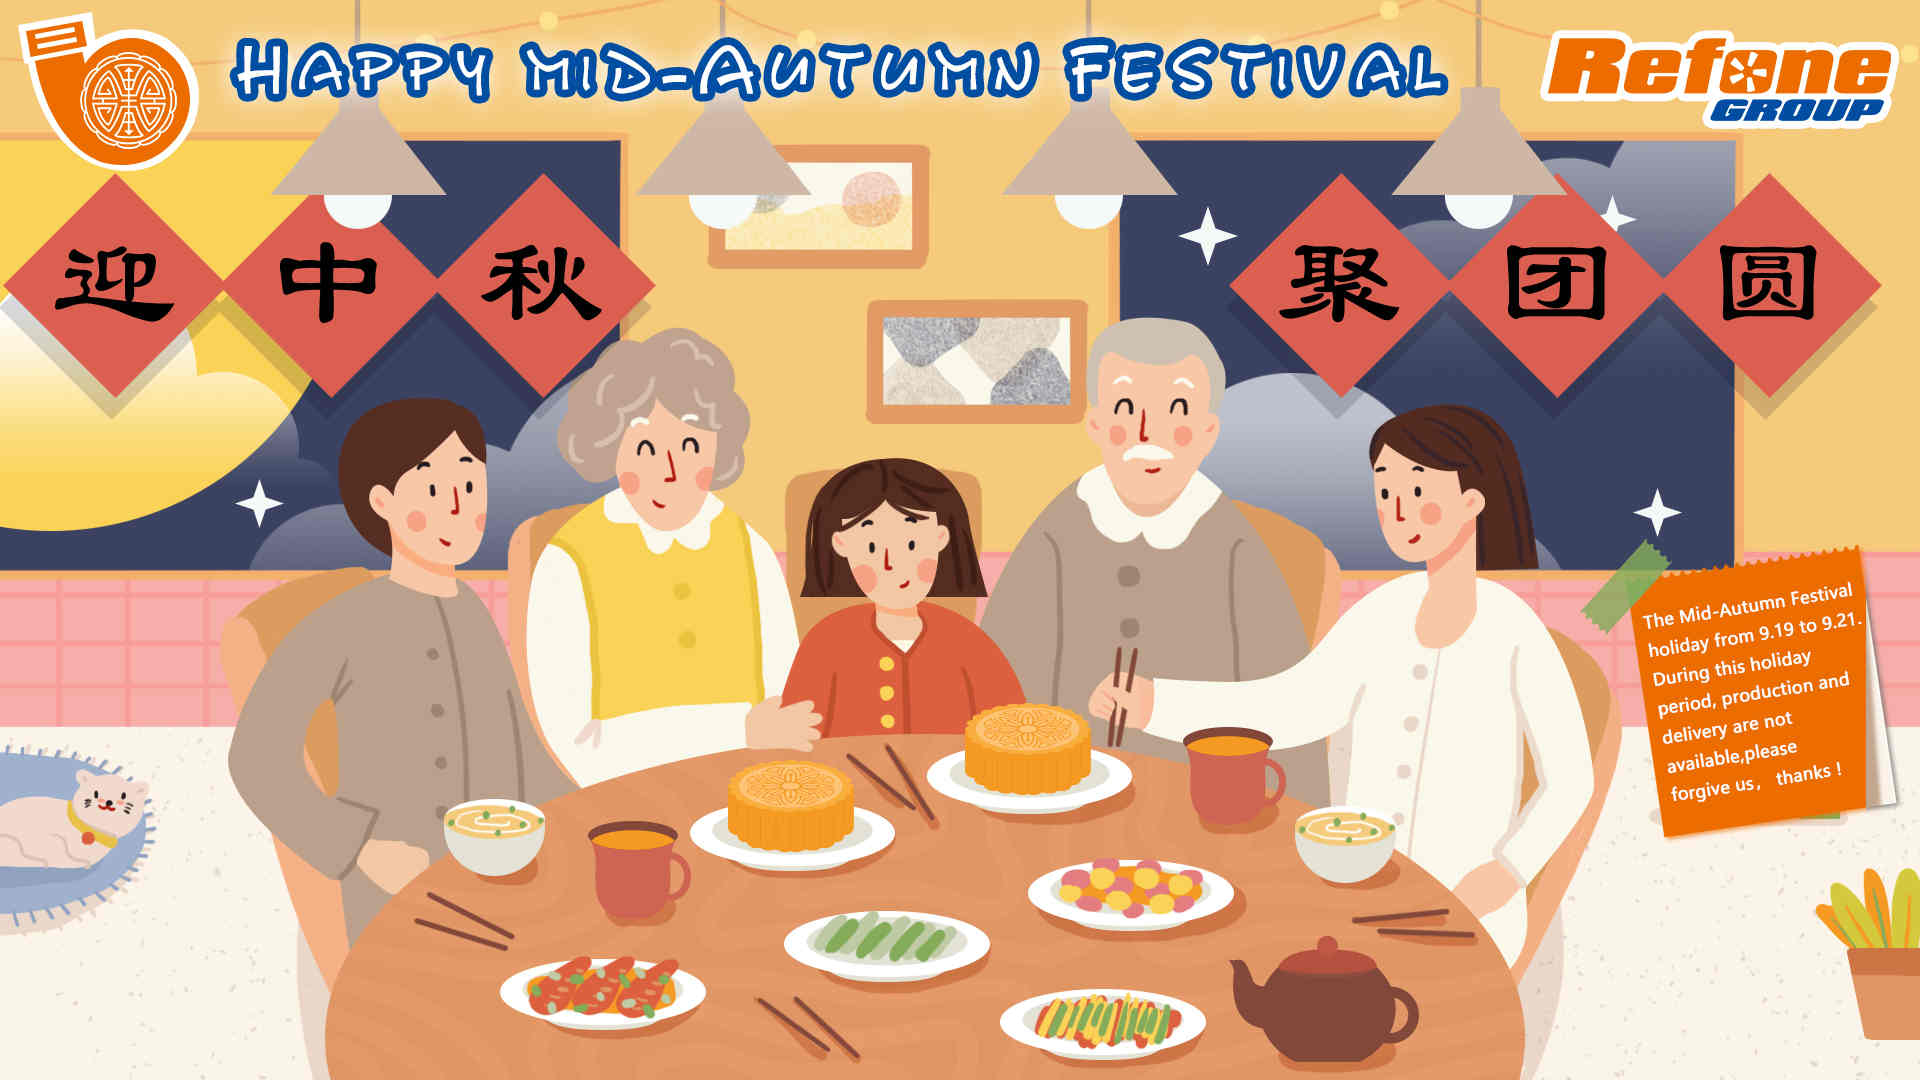 Le festival chinois de la mi-automne arrive | Refoneturbo.com